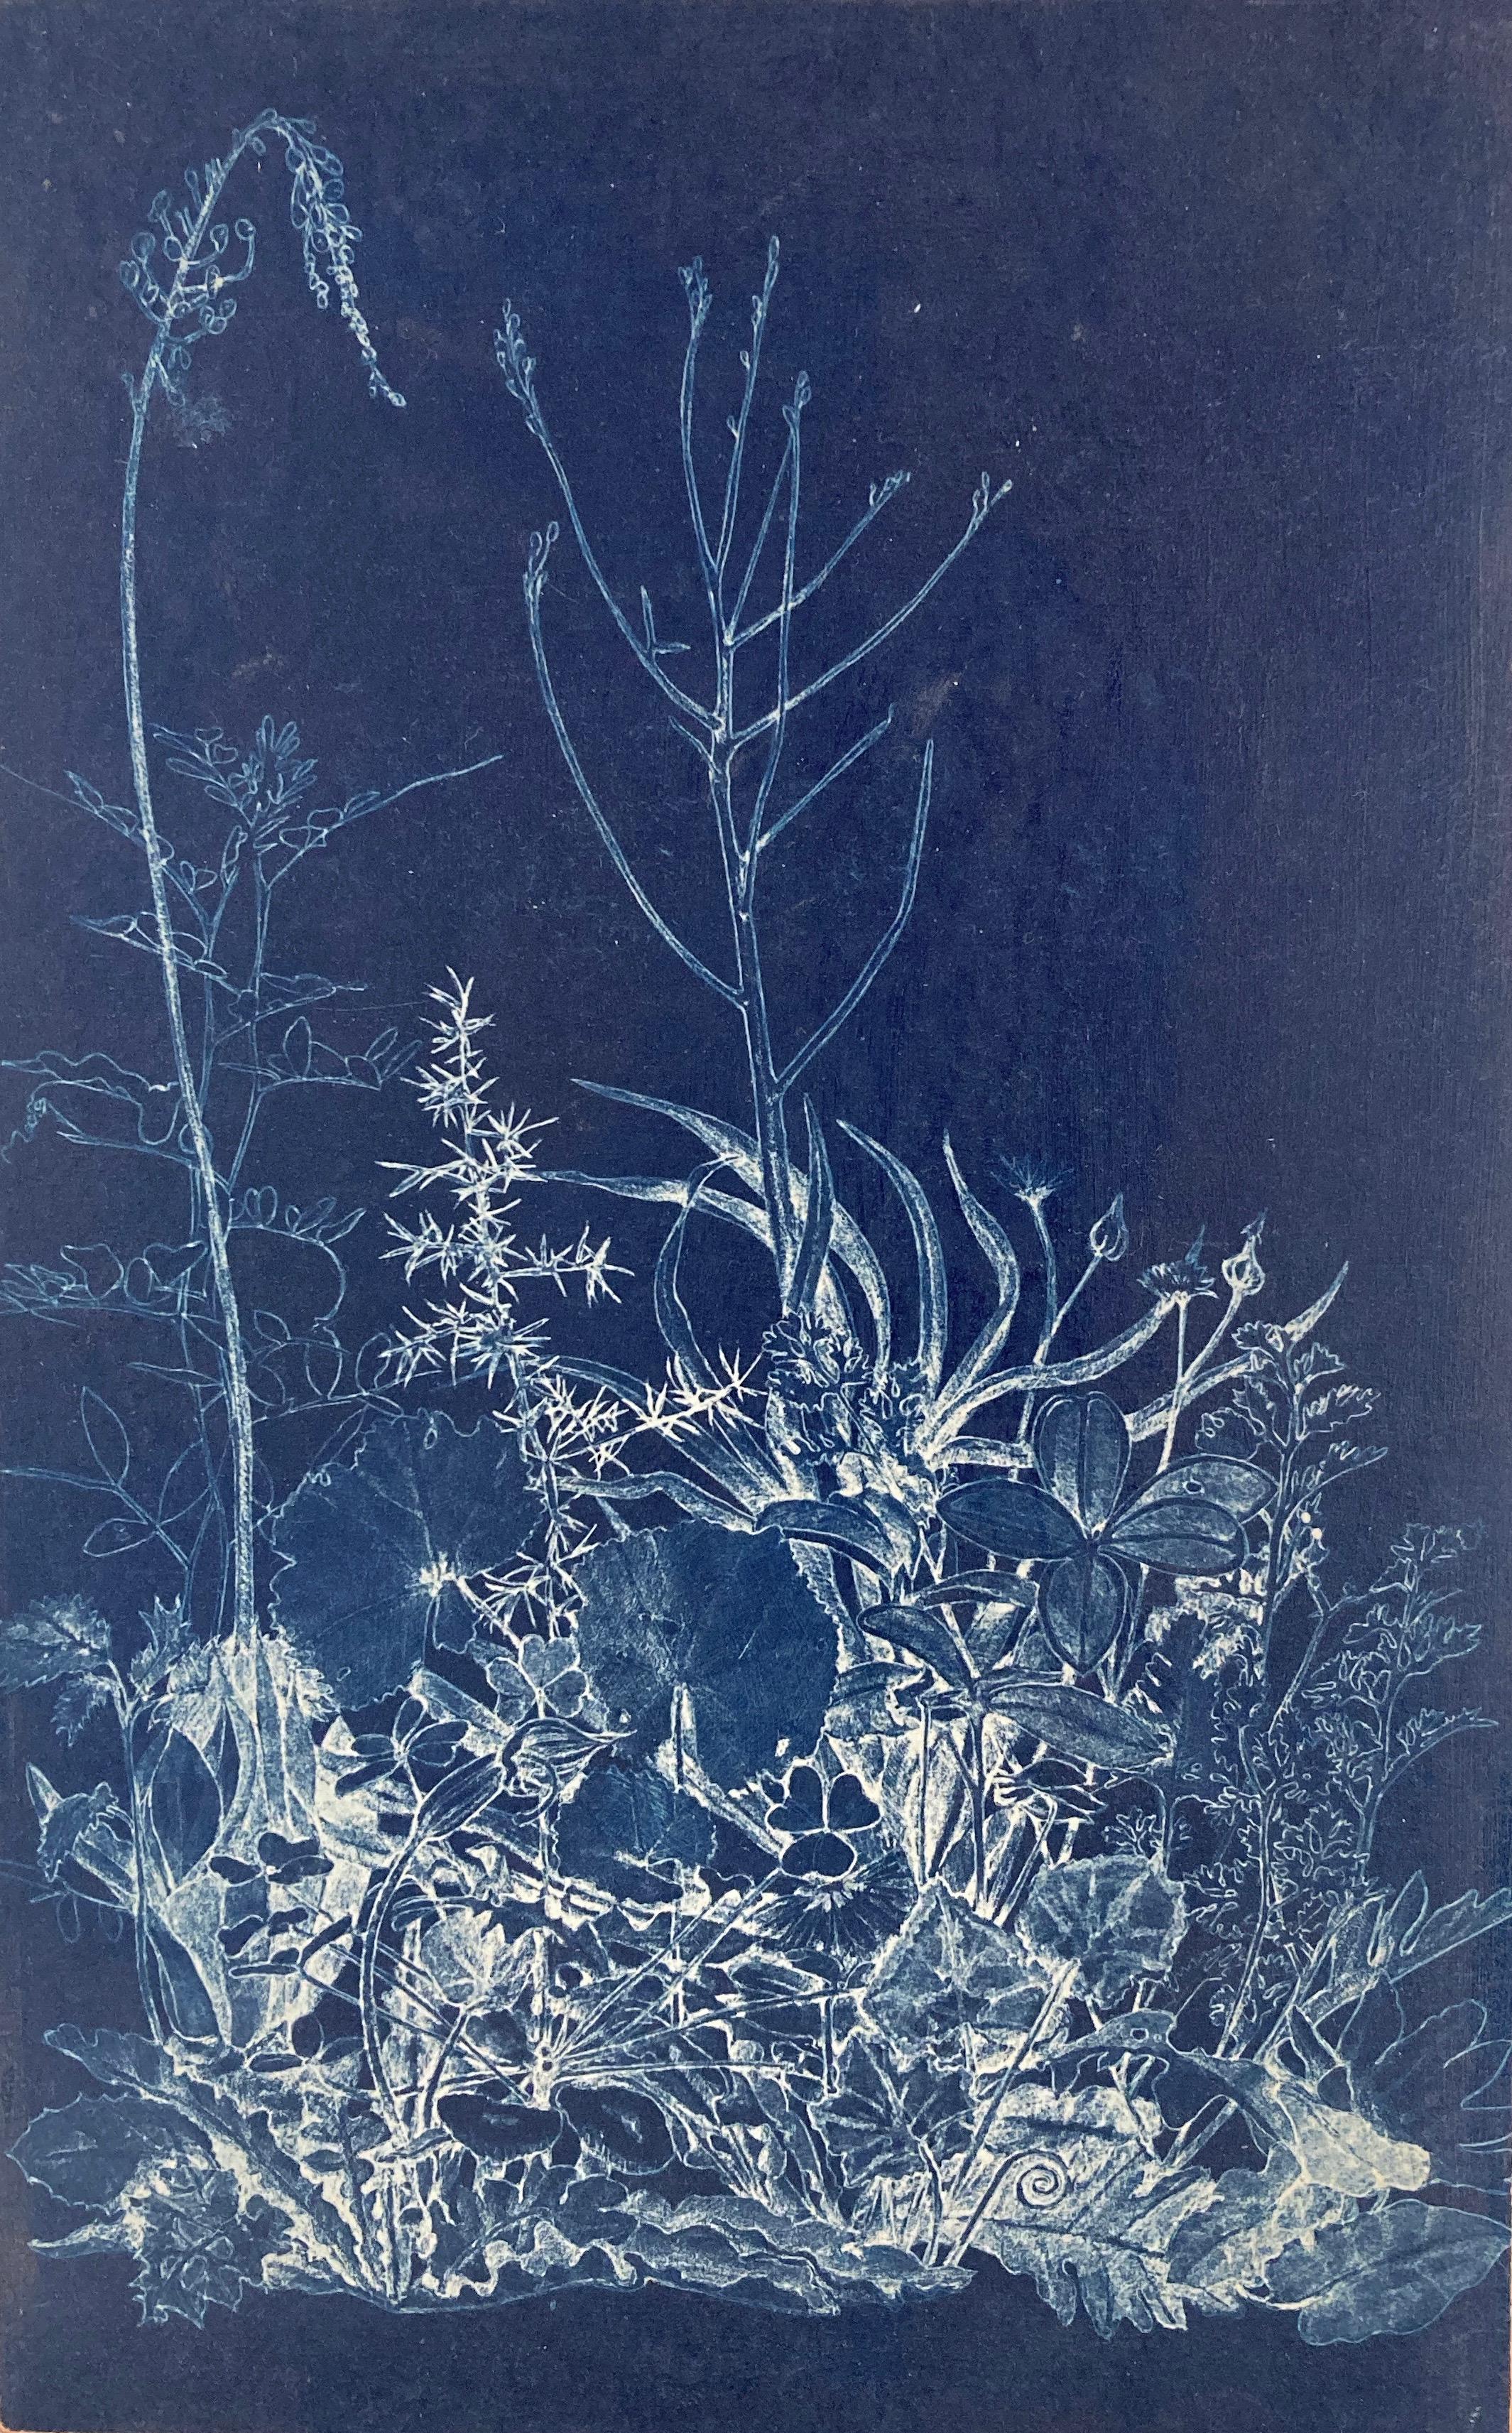 Landscape Photograph Judith Allen-Efstathiou - "Trace 5, Section 1   Étude de fleurs photographique réaliste/abstraite bleue/blance